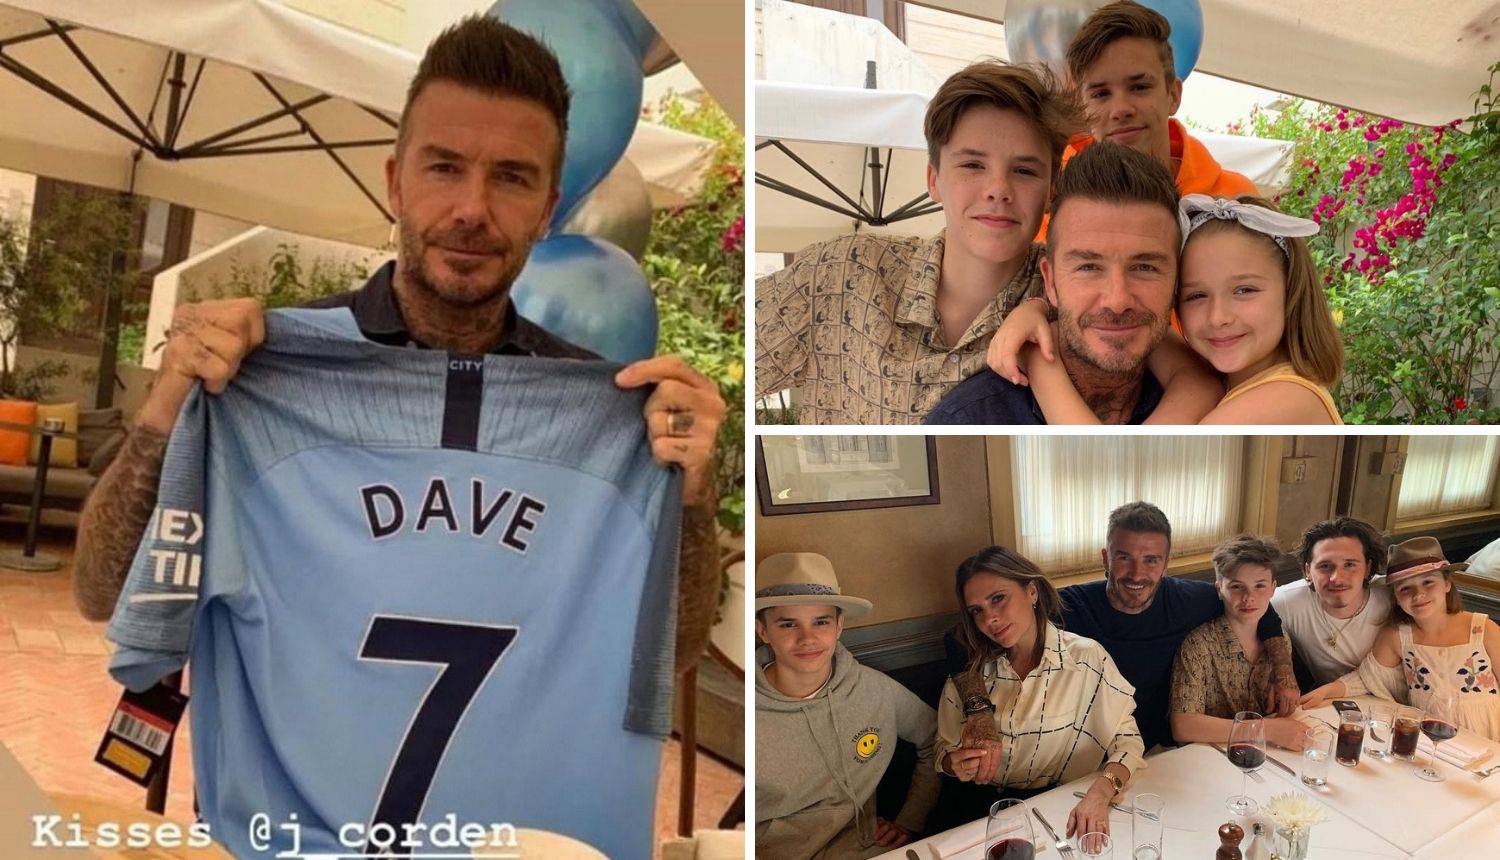 Victoria Beckham poklonila je mužu dres omraženog kluba